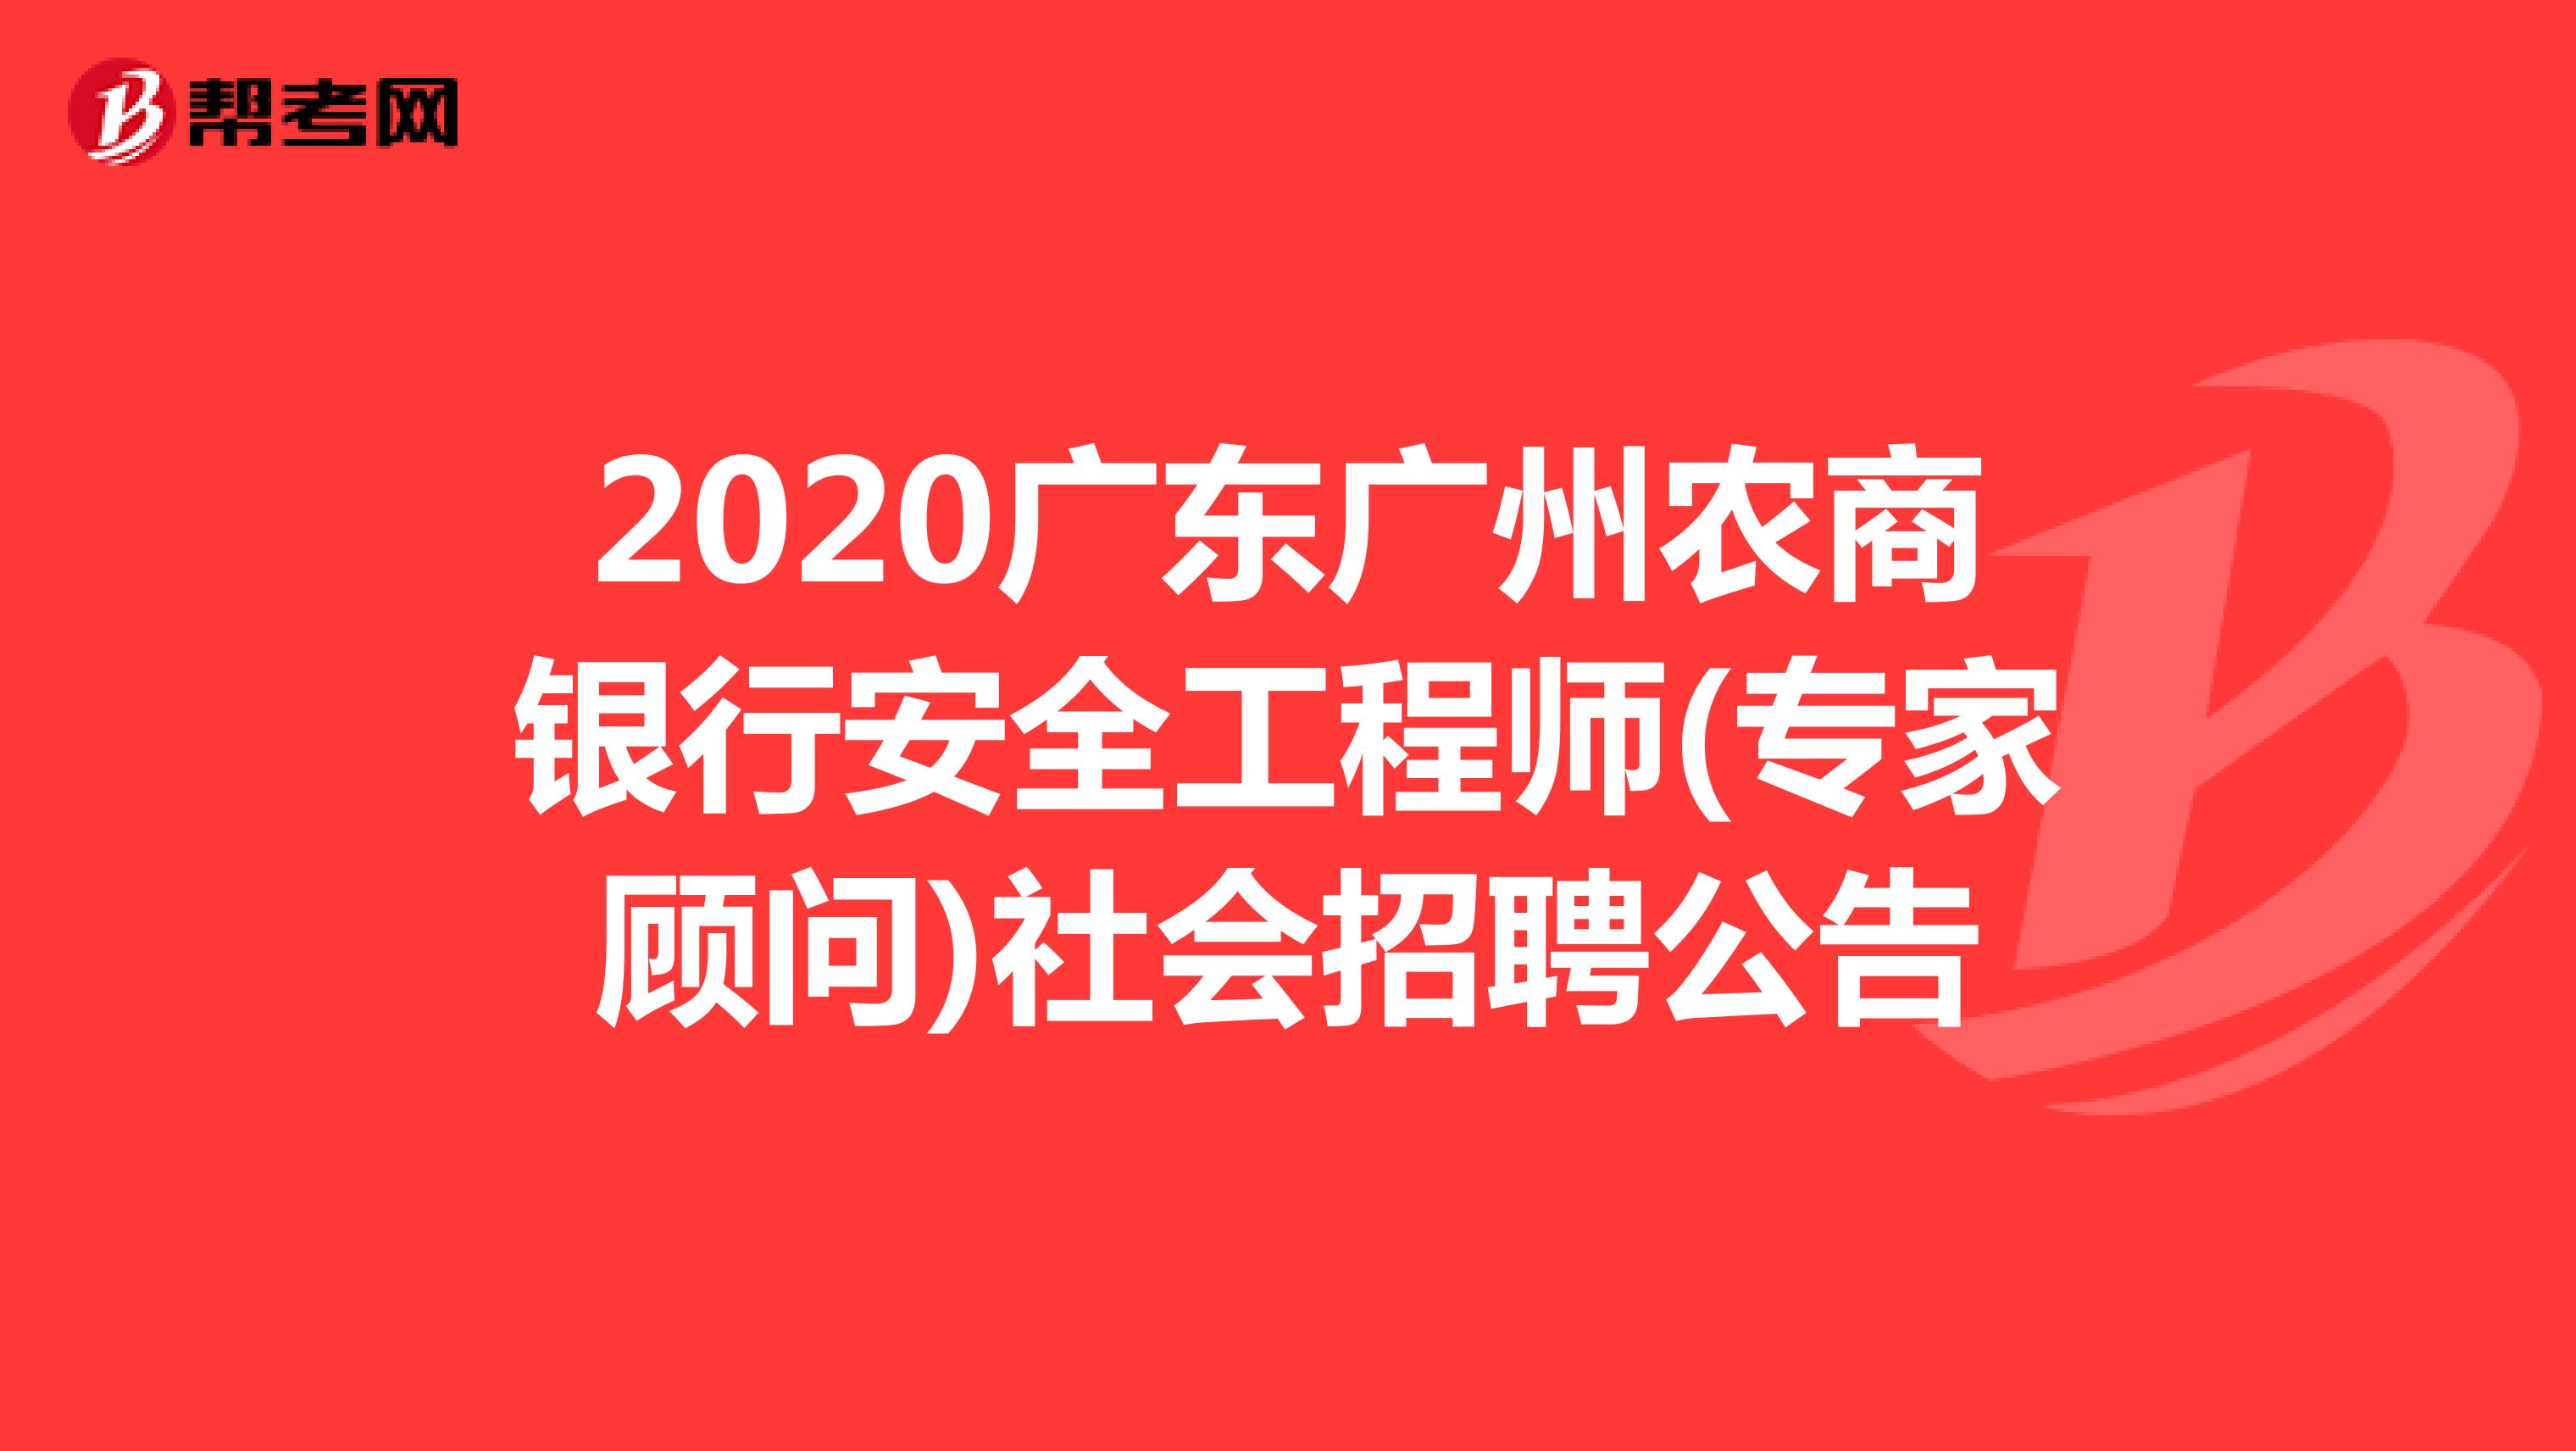 2020广东广州农商银行安全工程师(专家顾问)社会招聘公告